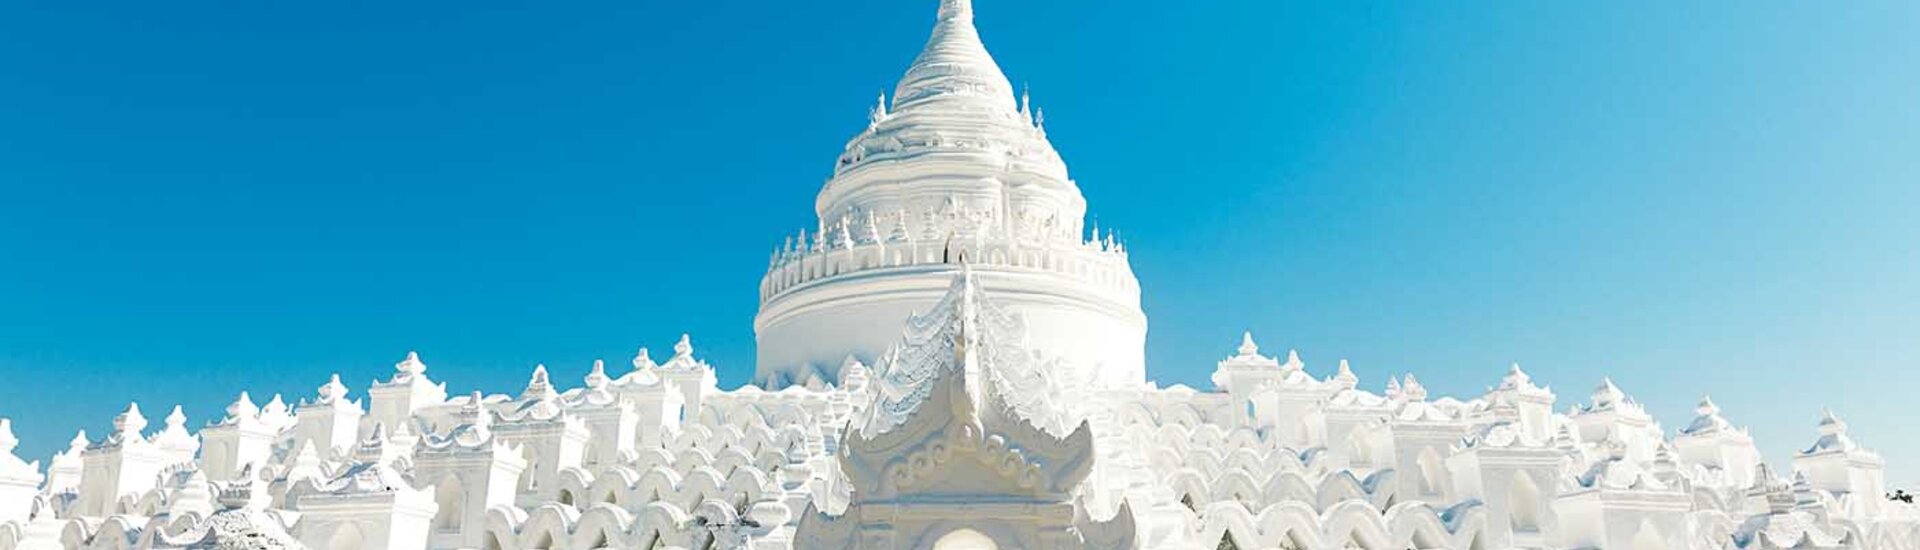 Weiße Pagoden, Myanmar Mingun